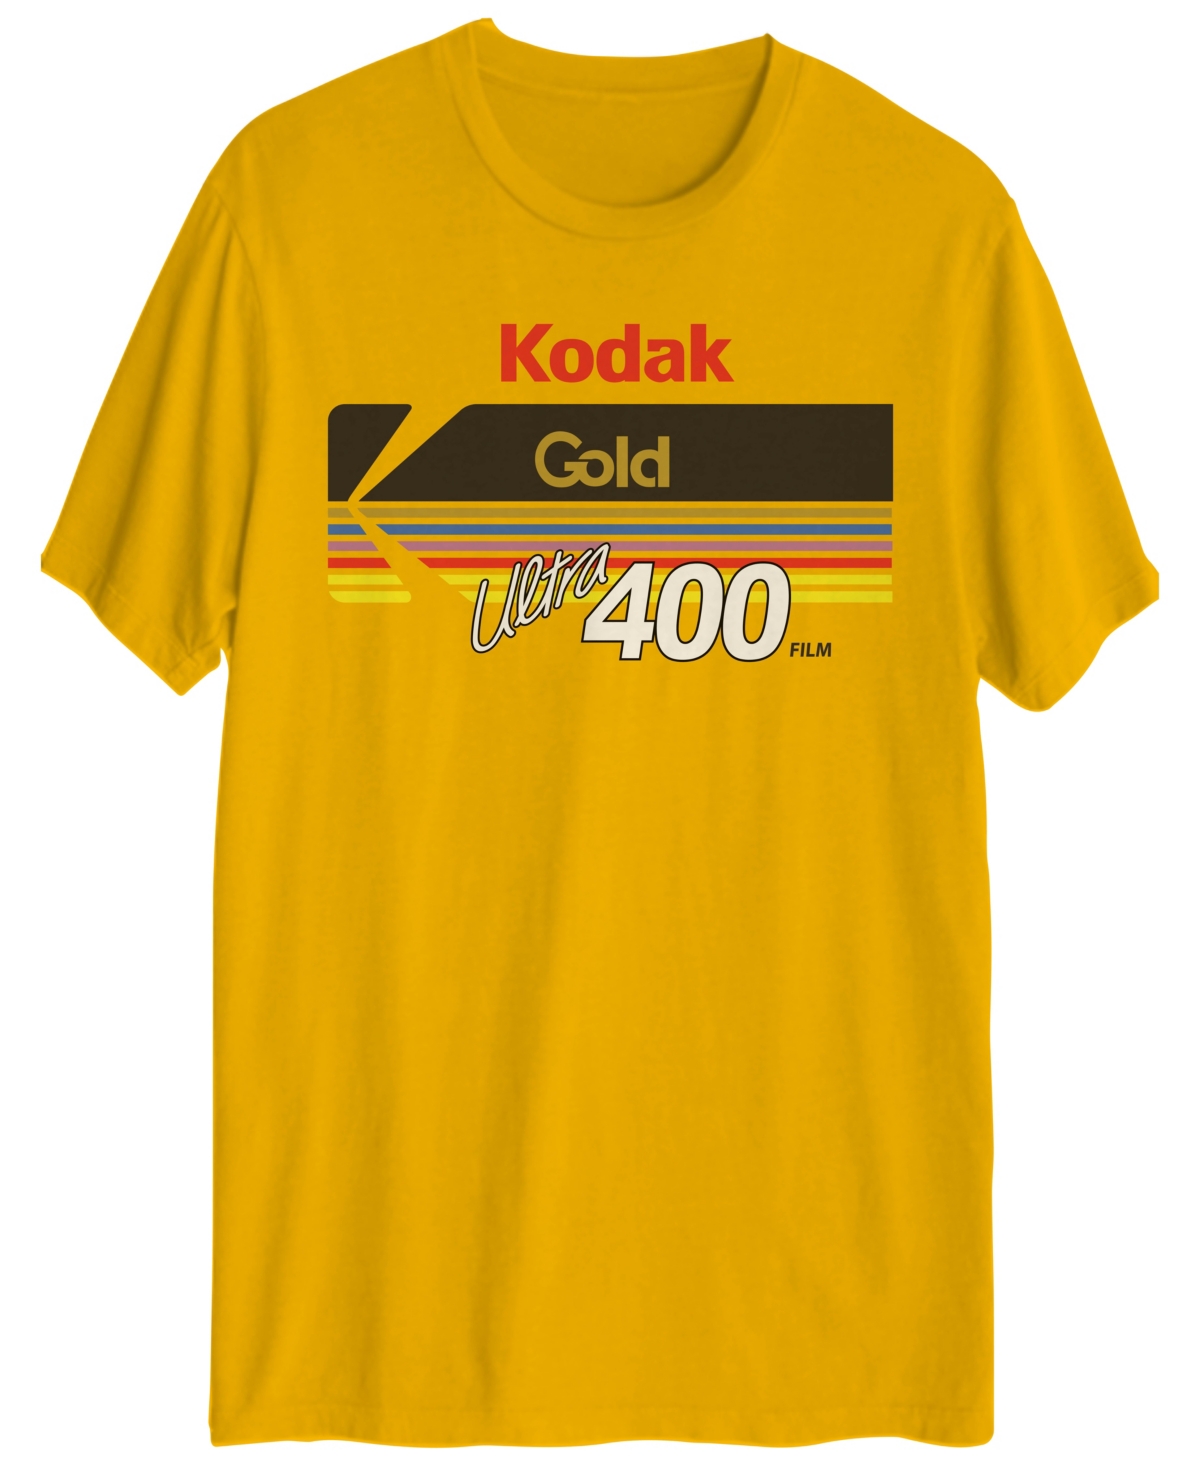 Kodak Gold Ultra 400 Men's Graphic T-Shirt - Gold